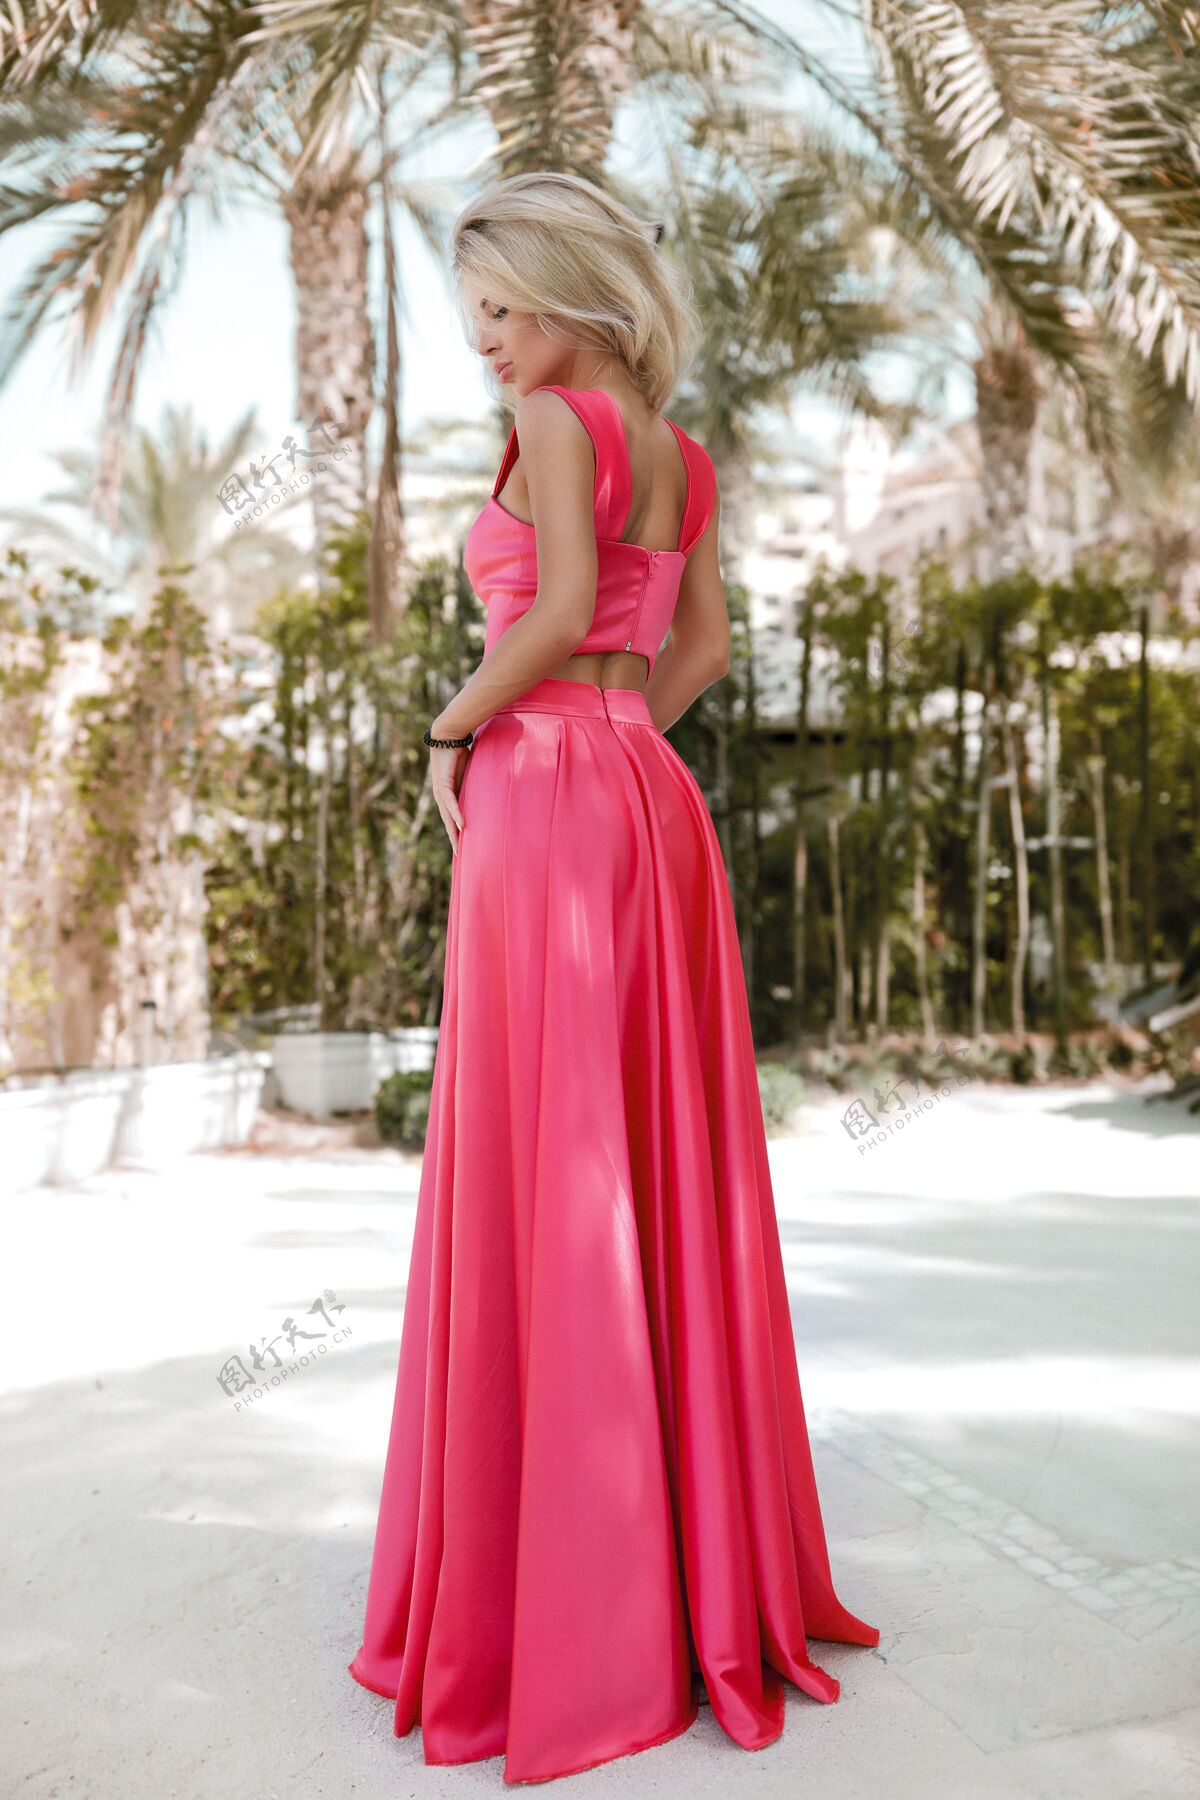 黑板身材匀称的金发碧眼的迪拜海边 棕榈树 火辣 华丽的连衣裙 夏日阳光生活方式的时尚拍摄 迎风飘舞的连衣裙 平静而冷峻的泳池边 发型 妆容时尚化妆美女脸